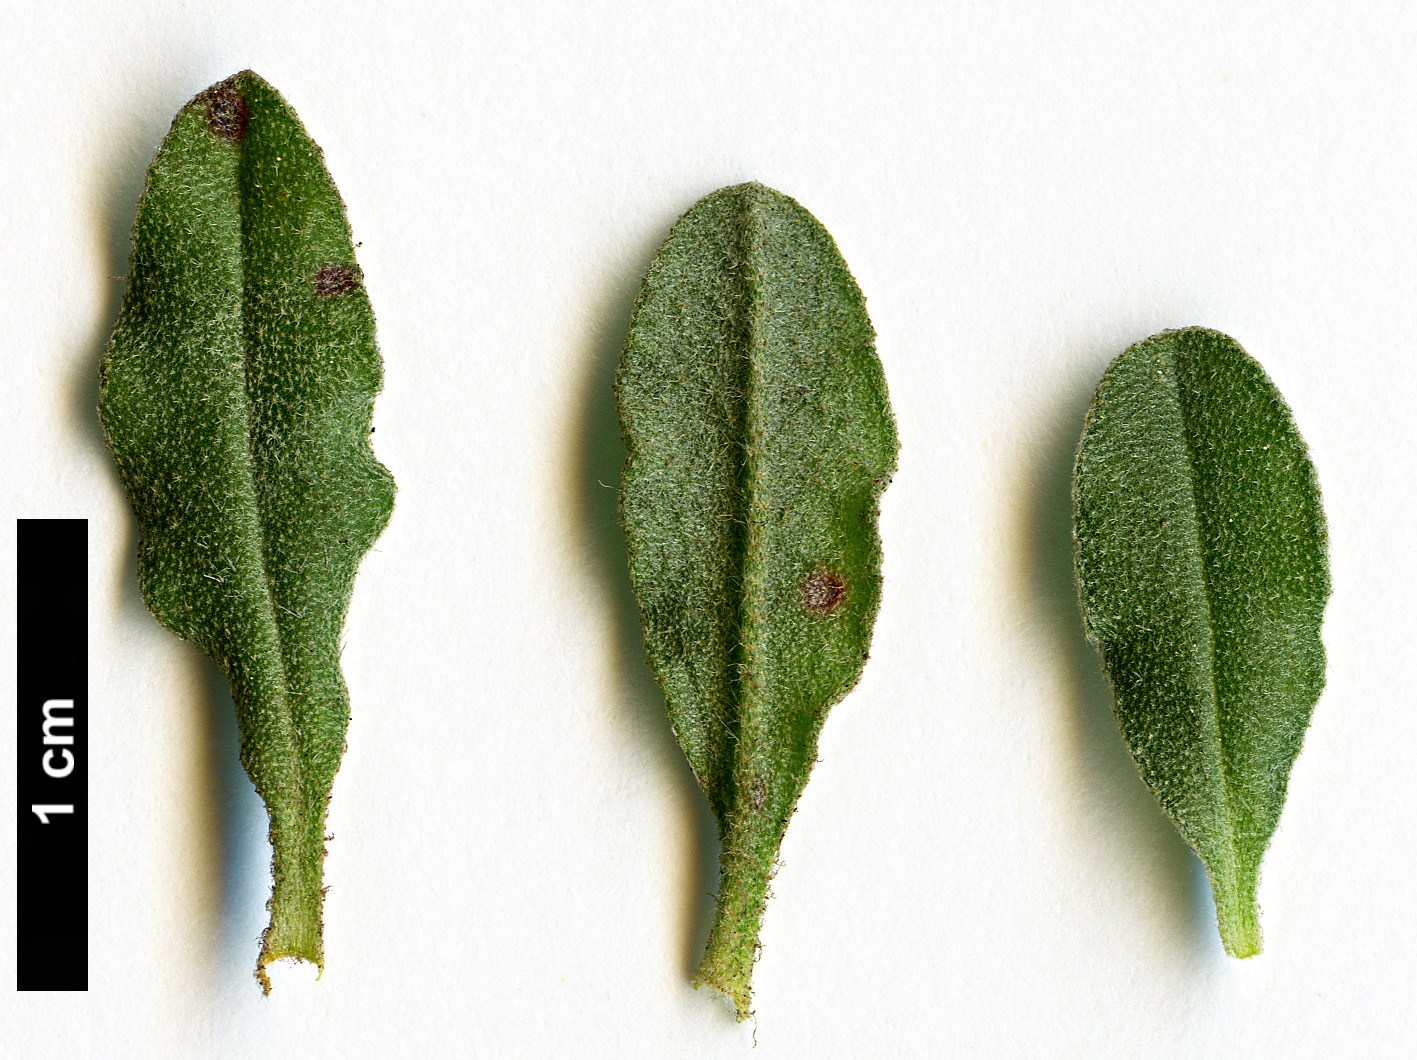 High resolution image: Family: Cistaceae - Genus: Halimium - Taxon: lasianthum - SpeciesSub: subsp. formosum